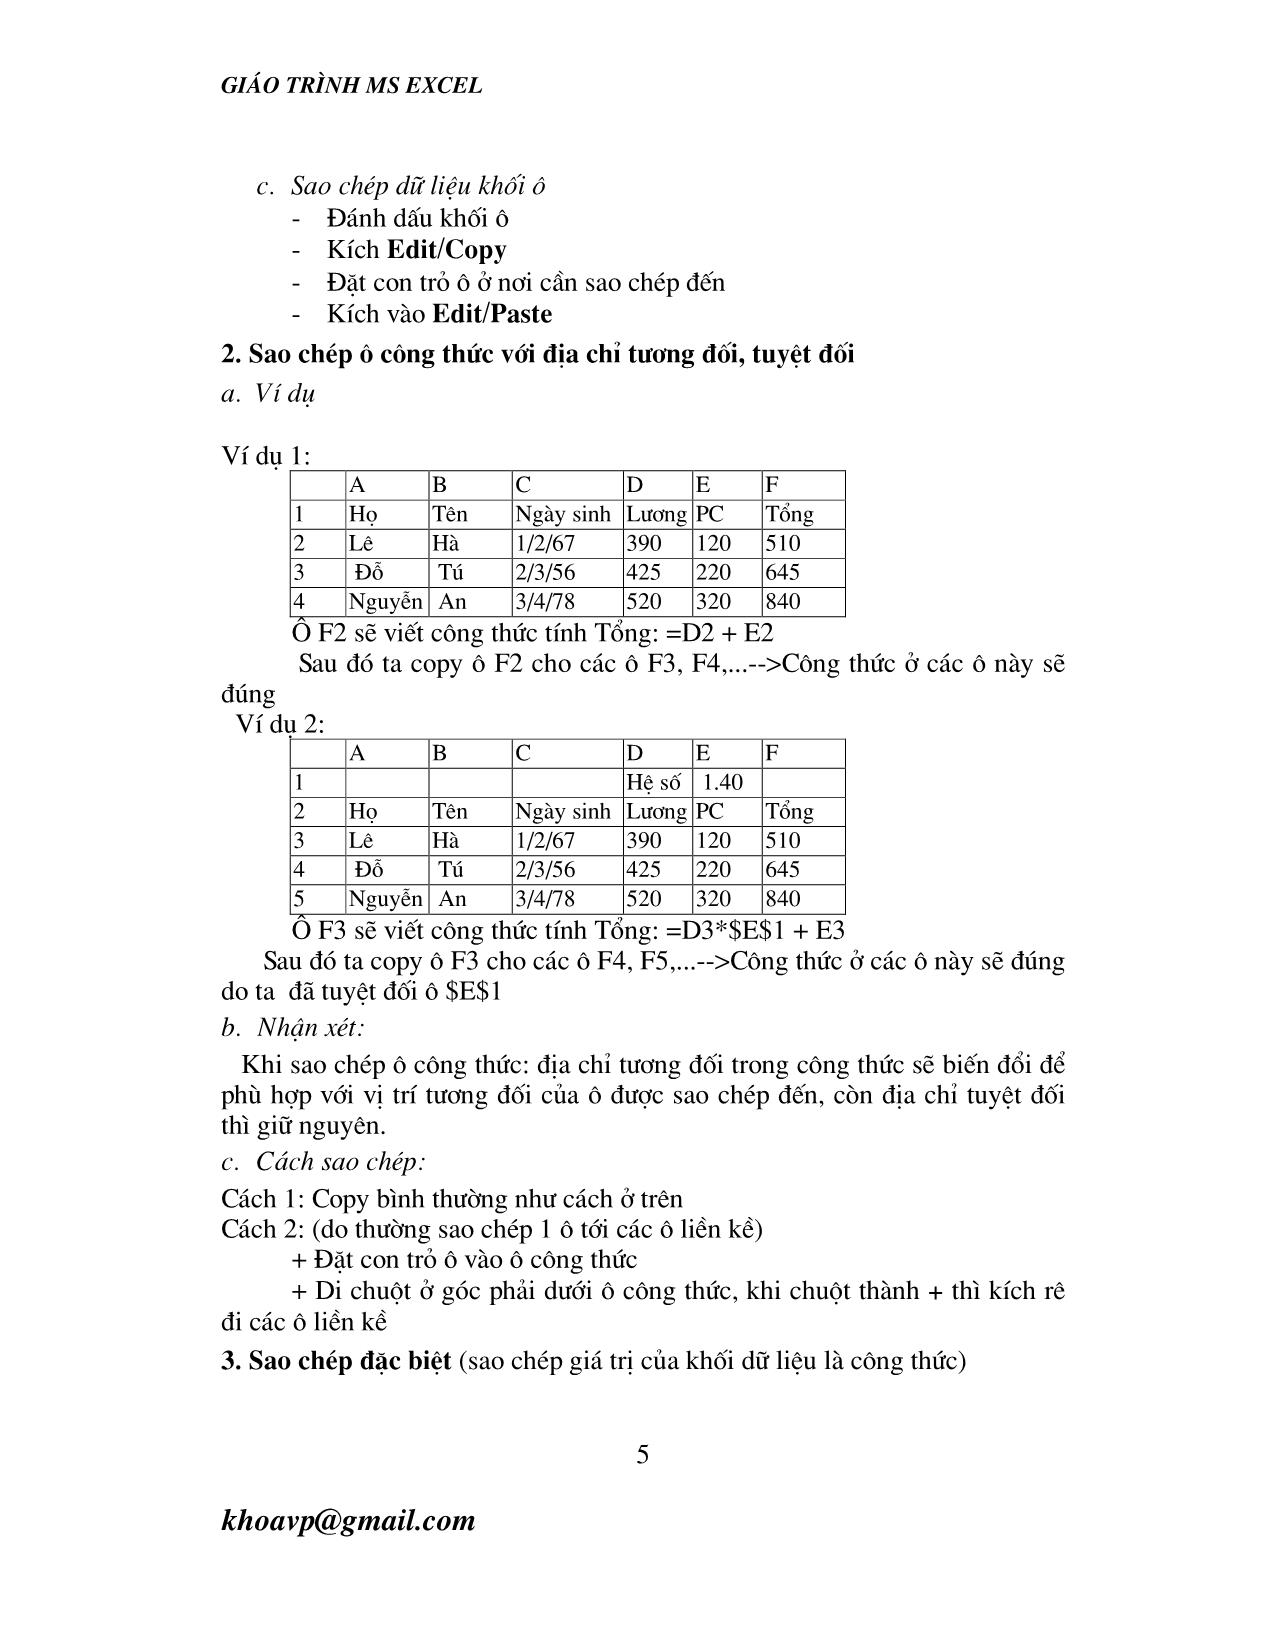 Giáo trình Ms Excel trang 5